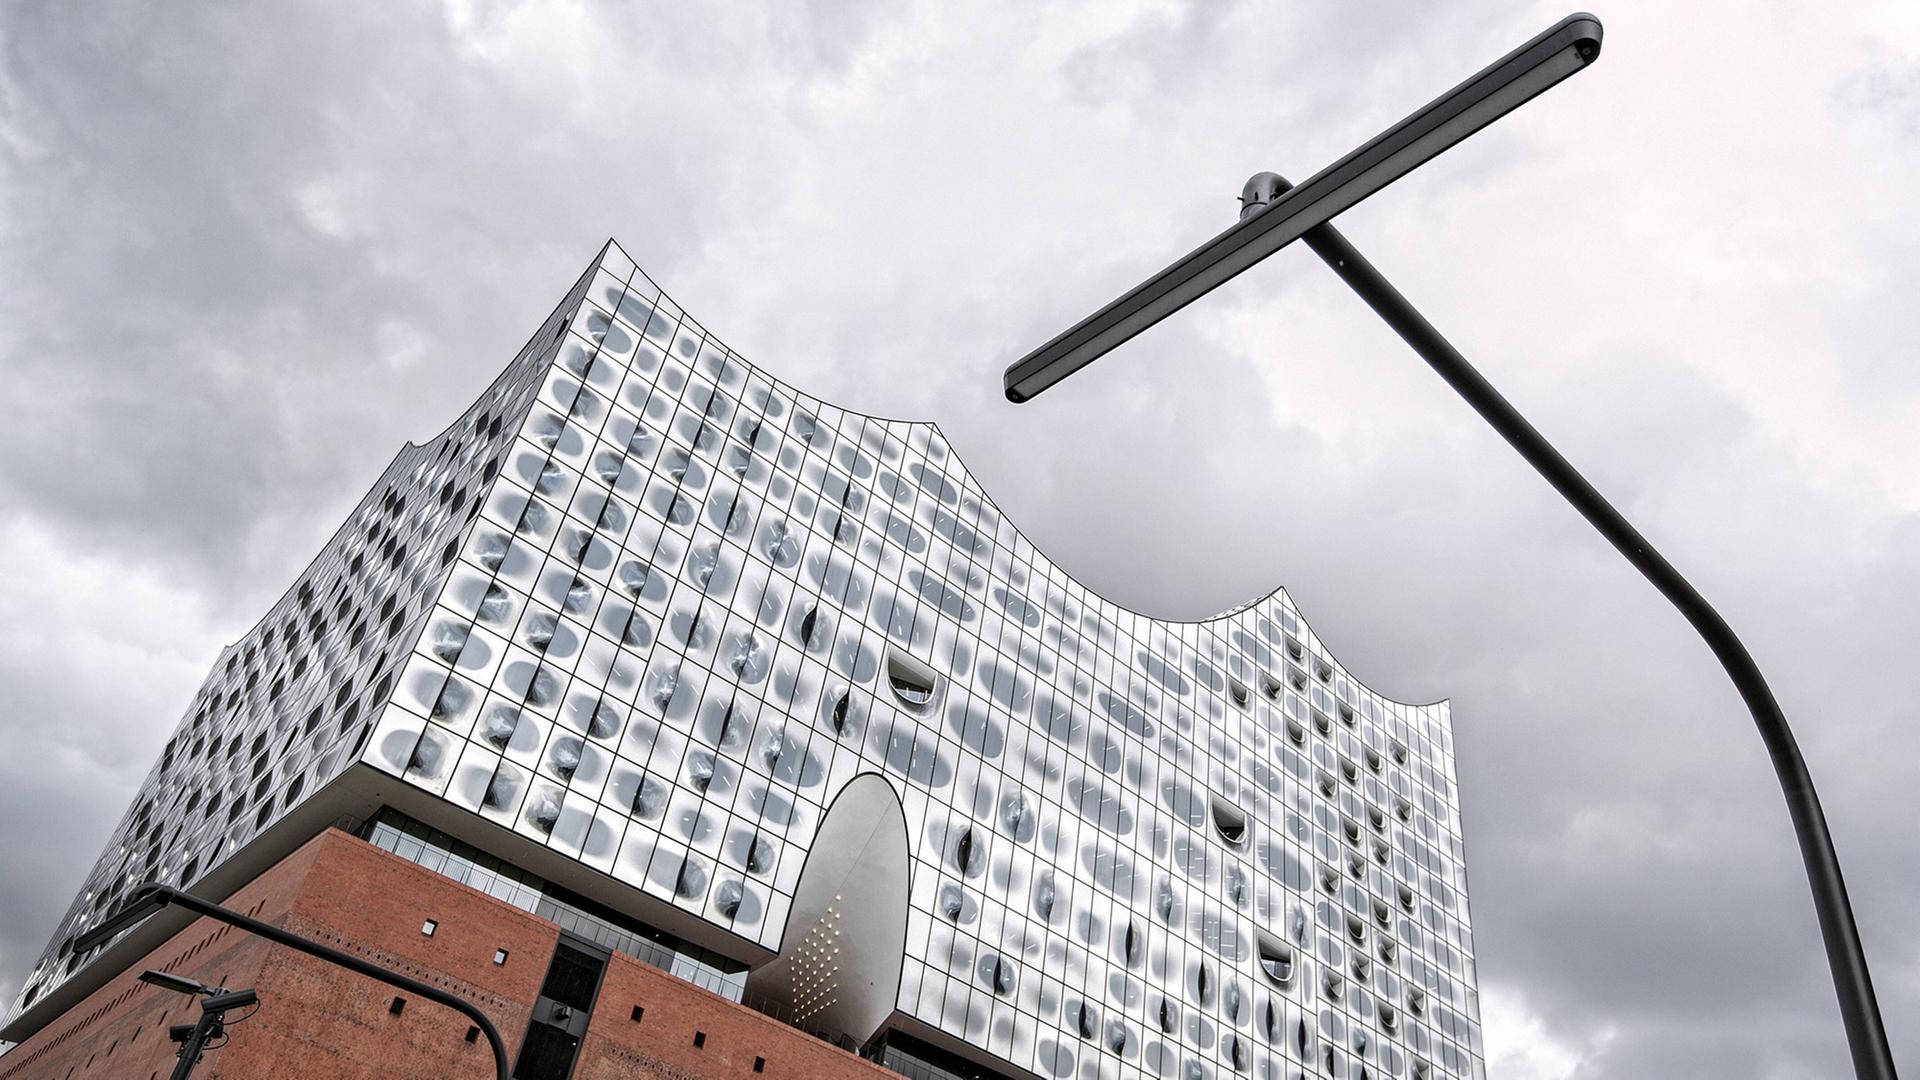 Nach langer Bauzeit endlich fertig: Das Konzerthaus Elbphilharmonie in der Hamburger HafenCity wird am 4. November 2016 eingeweiht. Entwurf und Planung des Gebäudes stammen vom Basler Architekturbüro Herzog & de Meuron.